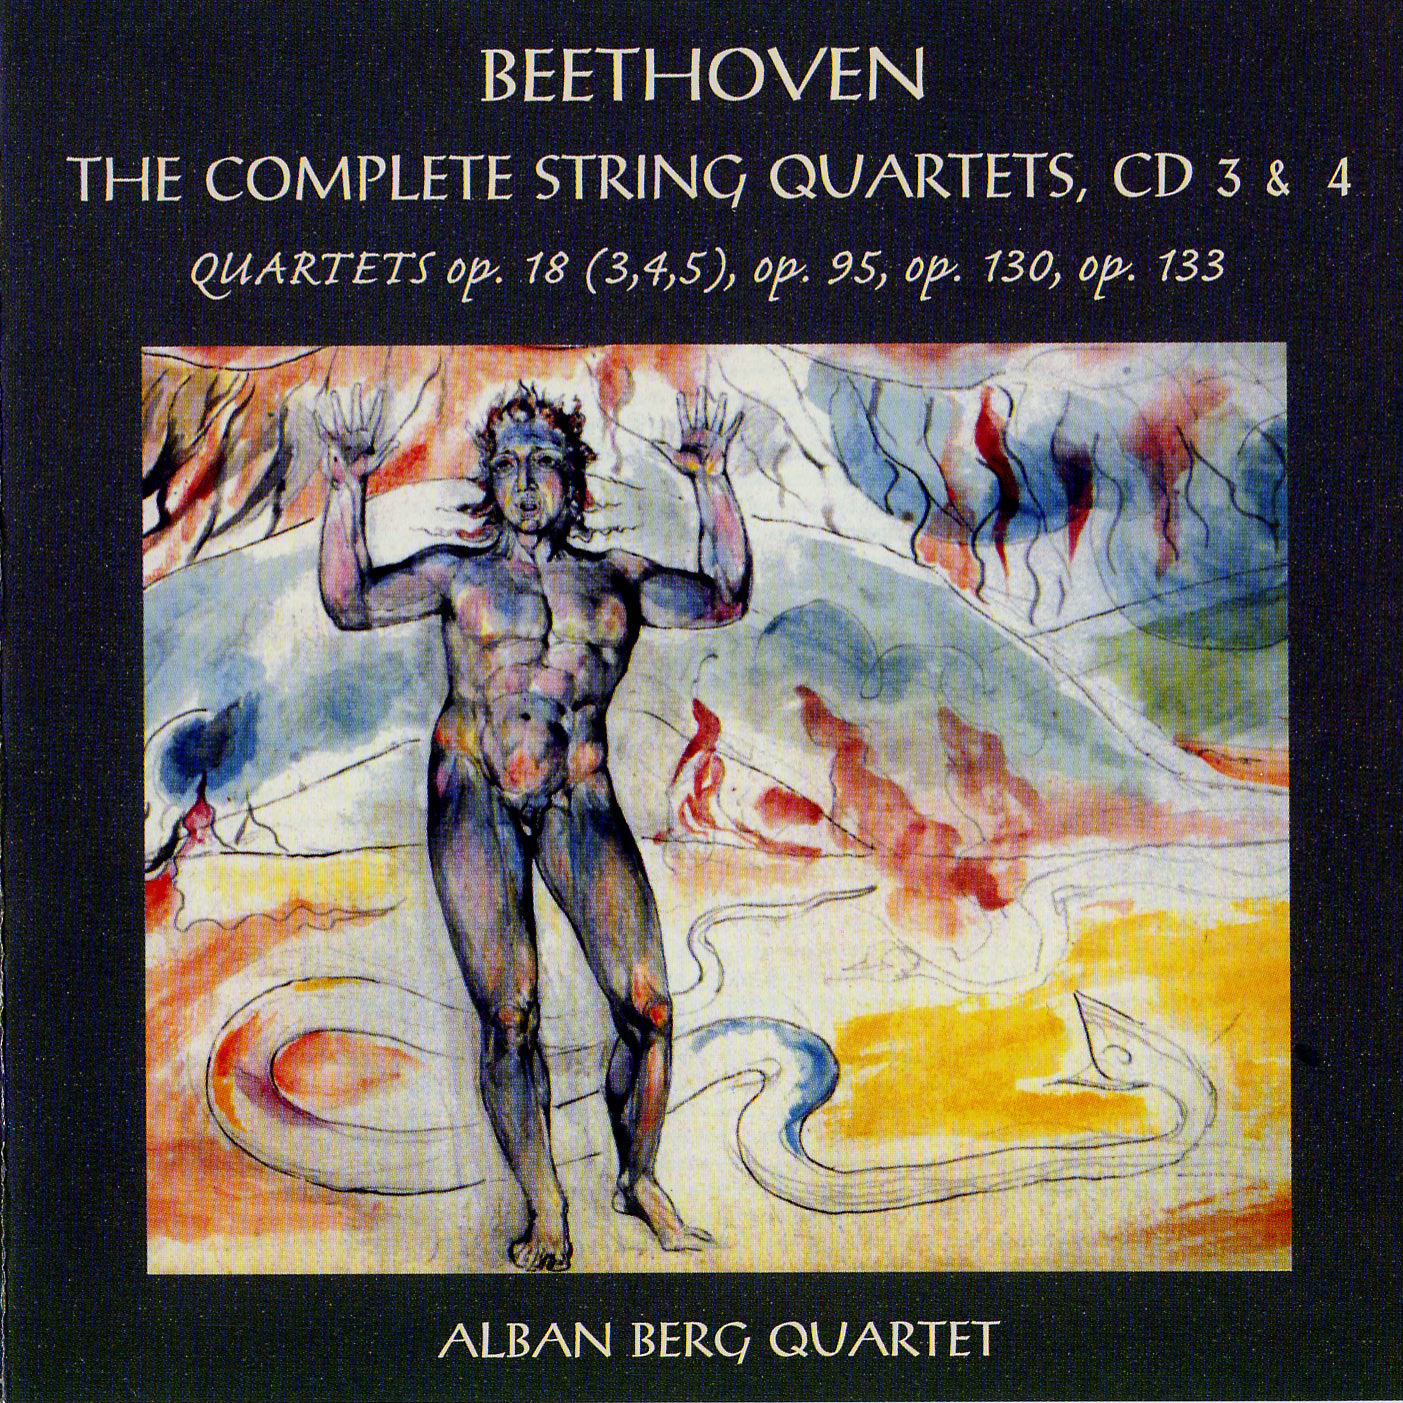 Ludwig van Beethoven 'The Complete String Quartets'Alban Berg Quartett 3,4' CD2/1999/Classic/